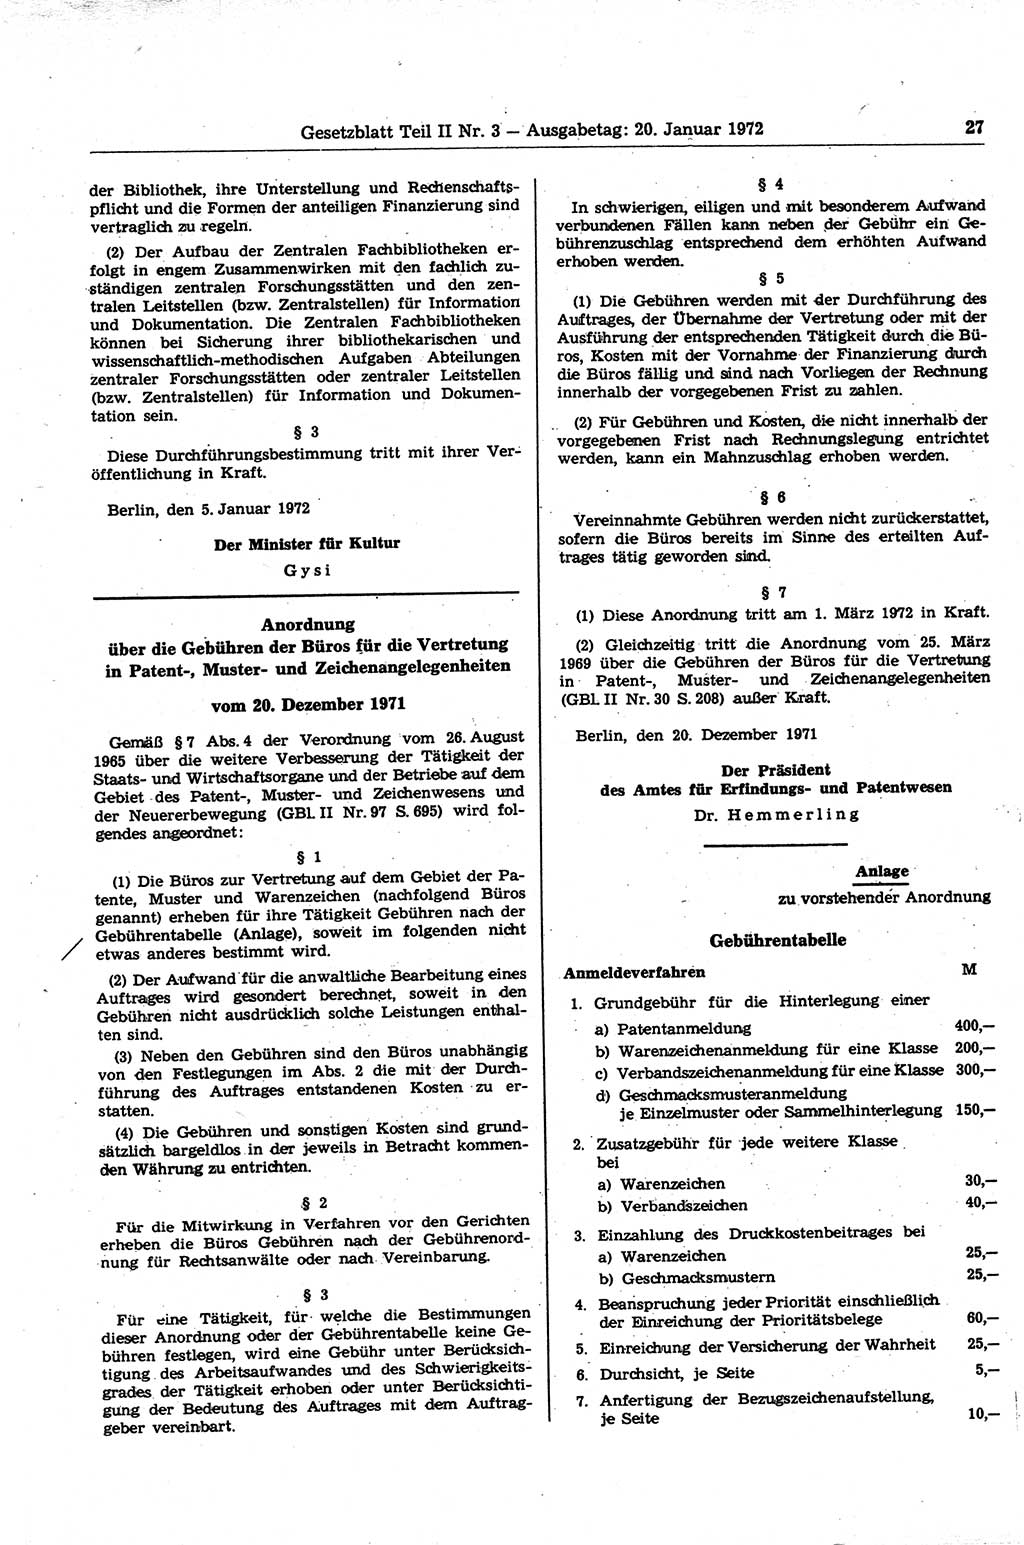 Gesetzblatt (GBl.) der Deutschen Demokratischen Republik (DDR) Teil ⅠⅠ 1972, Seite 27 (GBl. DDR ⅠⅠ 1972, S. 27)